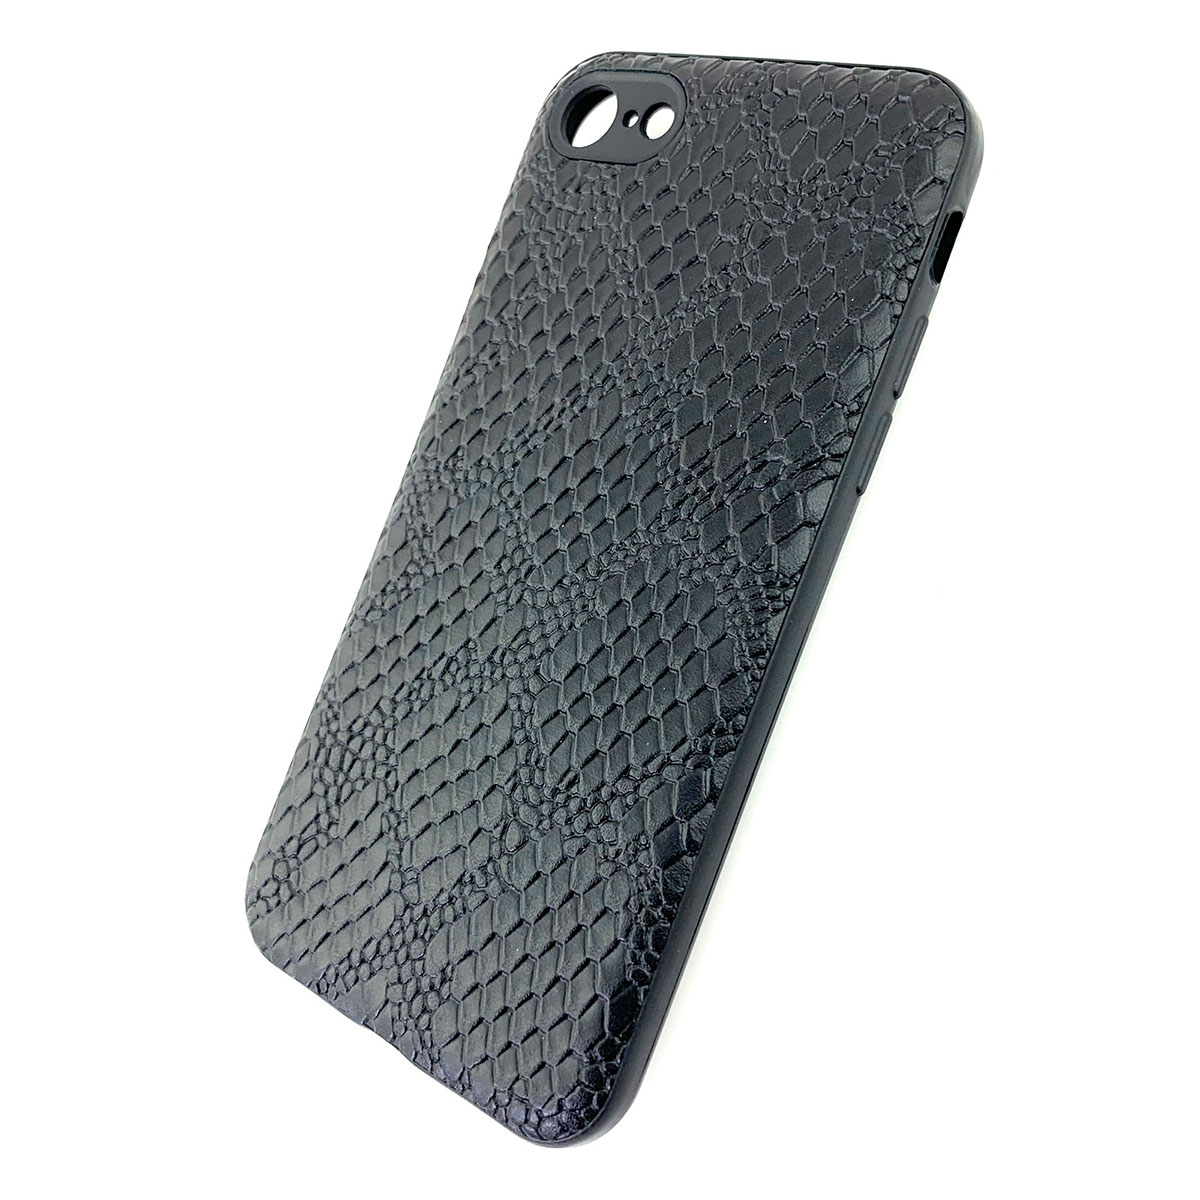 Чехол накладка для APPLE iPhone 7 Plus, 8 Plus, силикон, под кожу питона, цвет черный.